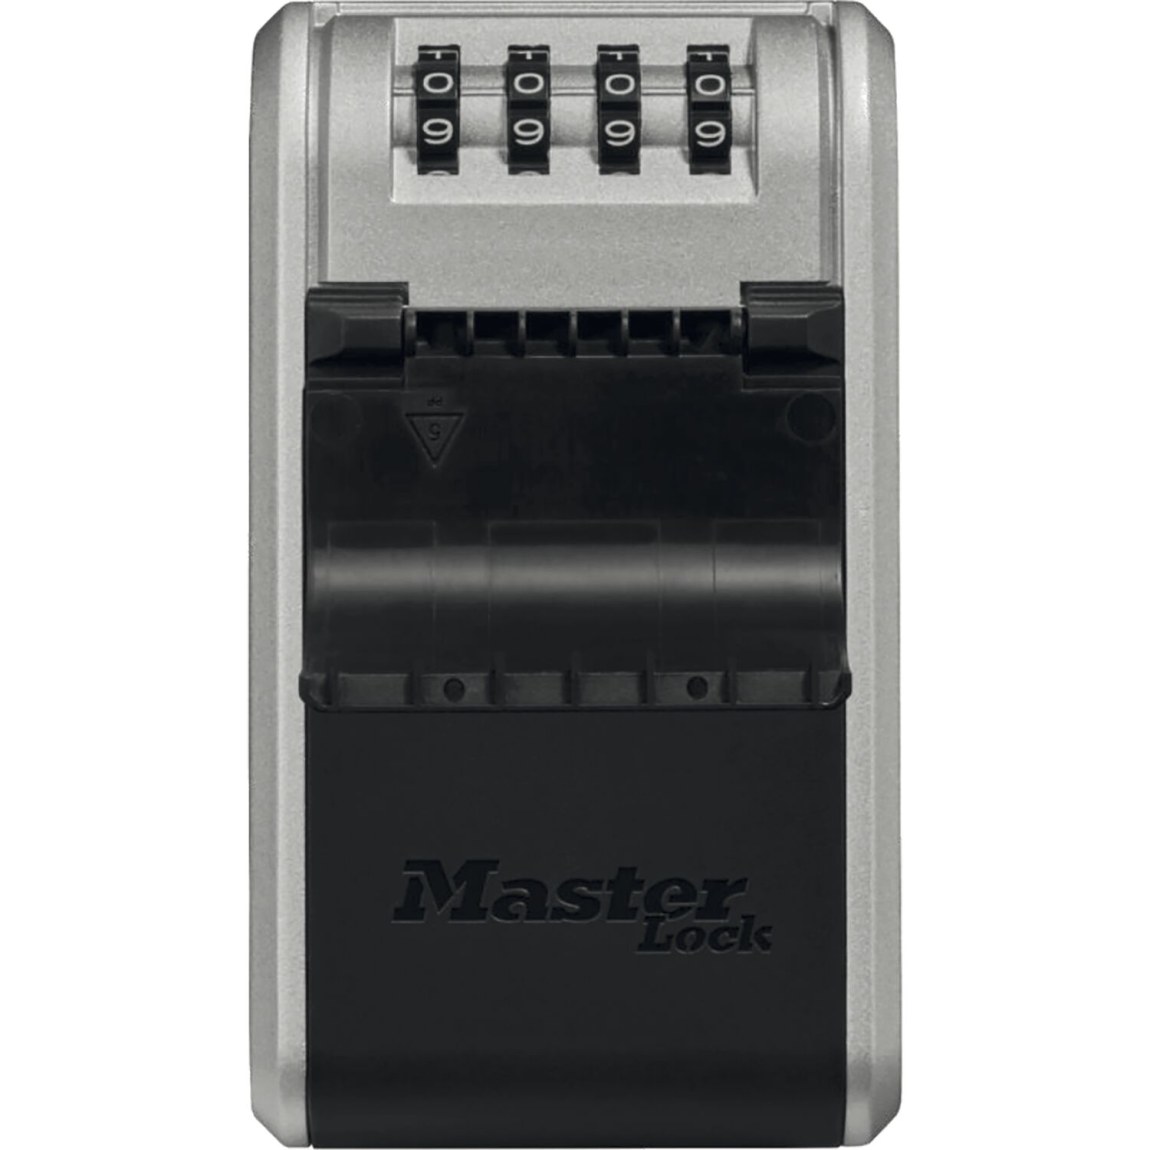 Keybox Master lock 5481 - Železářství Poštovní schránky, Schránky na klíče, Depozity Schránky na klíče